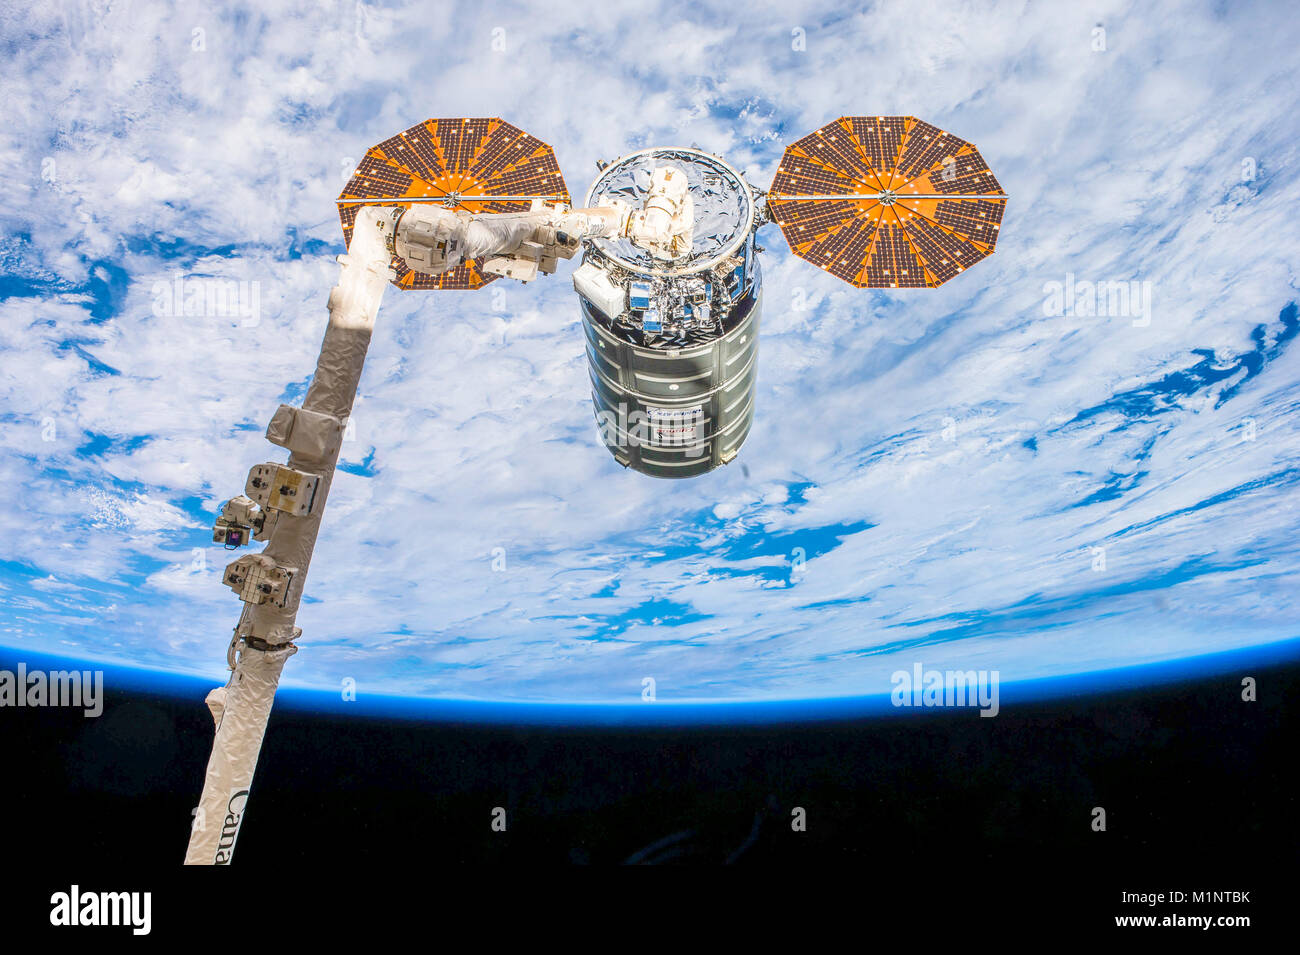 Cygnus nave cargo è catturato dal Canadarm nello spazio. Immagine cortesia della NASA.Questo elementi di immagine fornita dalla NASA Foto Stock